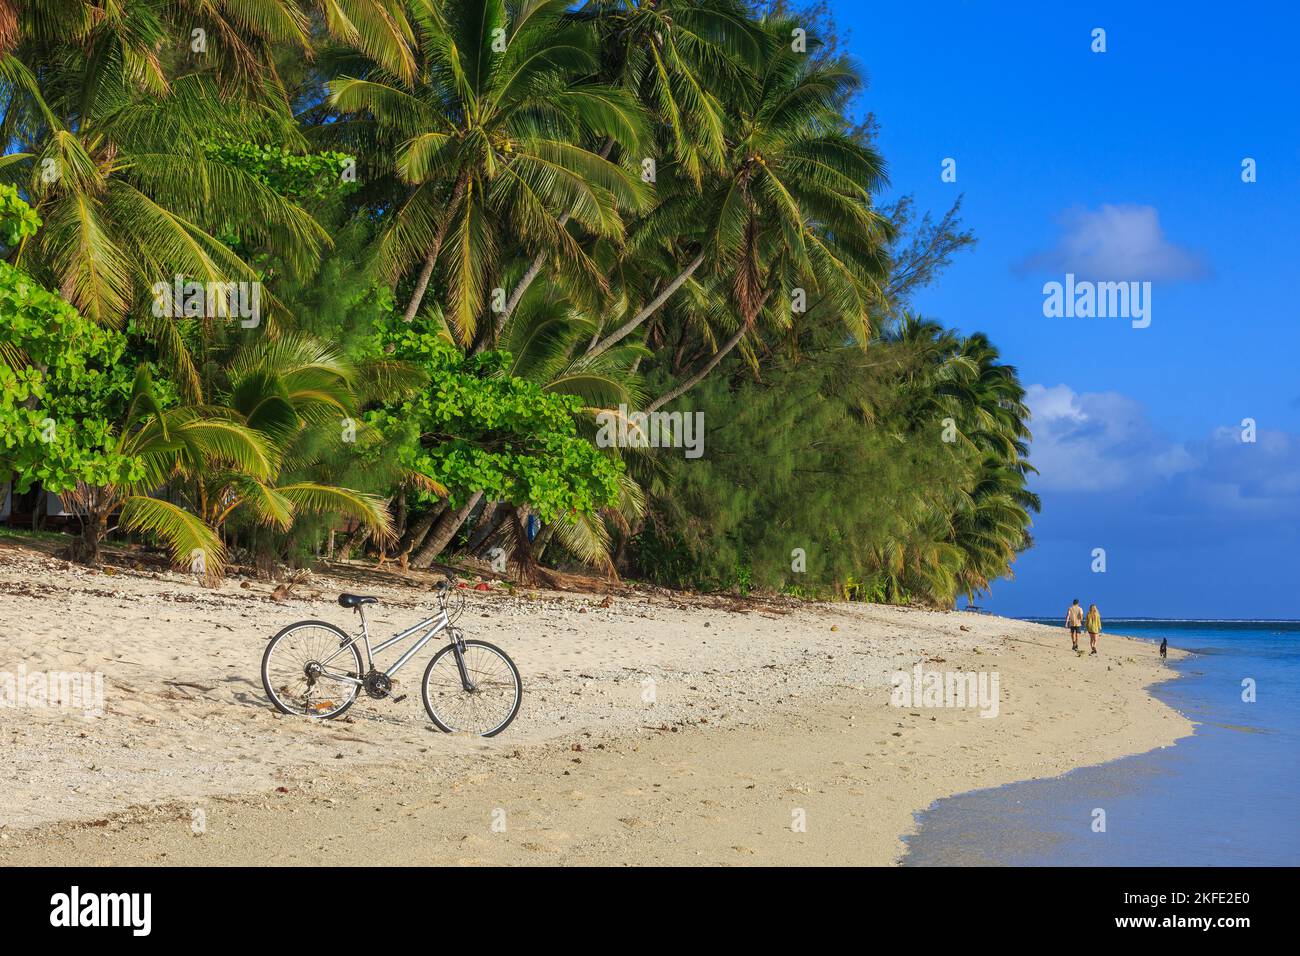 Una spiaggia tropicale, con una bicicletta parcheggiata sulla sabbia e una coppia passeggiando con un cane. Rarotonga, Isole Cook Foto Stock